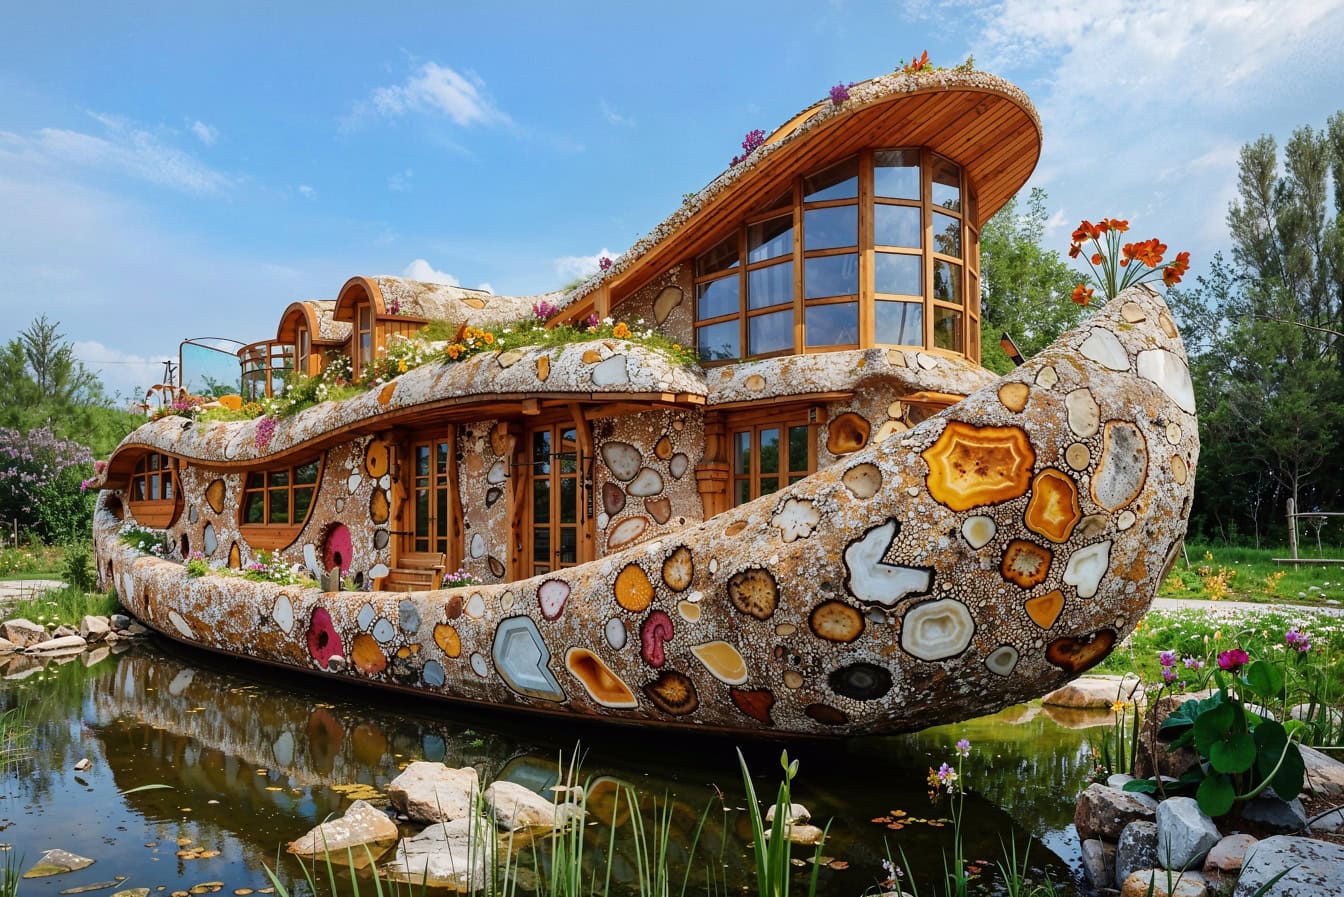 Il concetto di casa in una forma di barca futuristico-fiabesca sull’acqua nel cortile